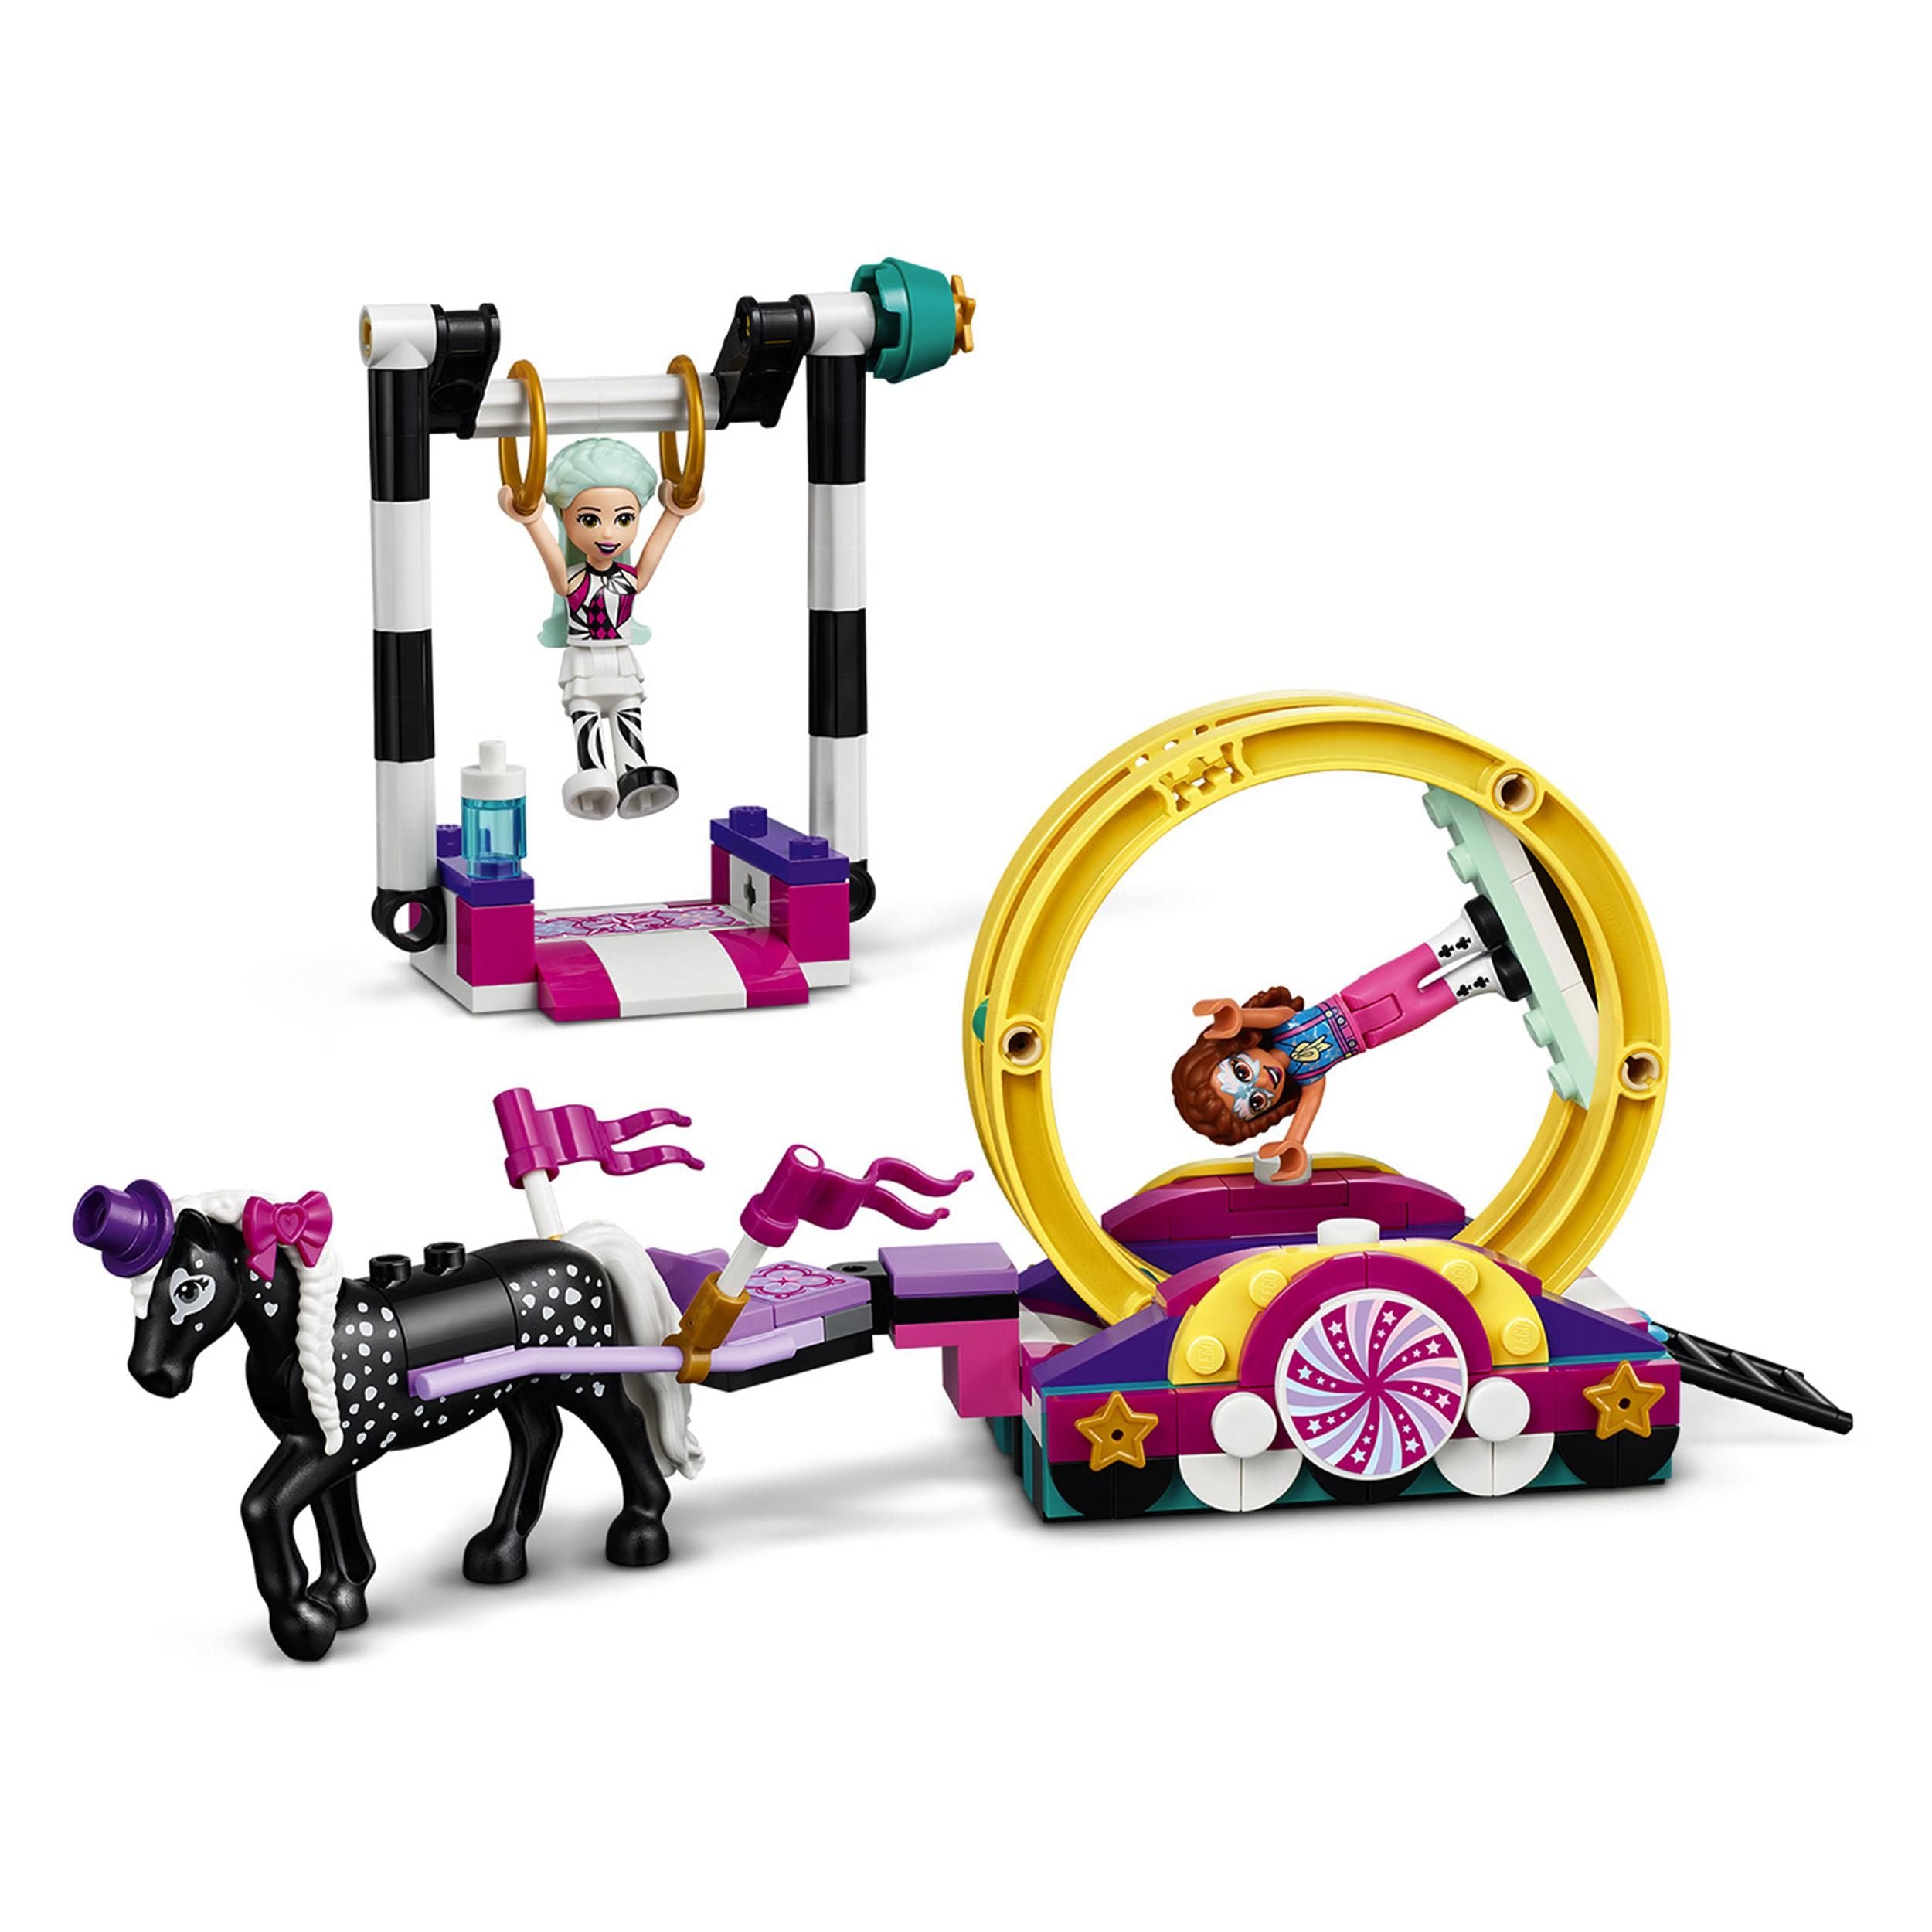 LEGO® Friends Magical Acrobatics Gymnastics Set 41686 Default Title